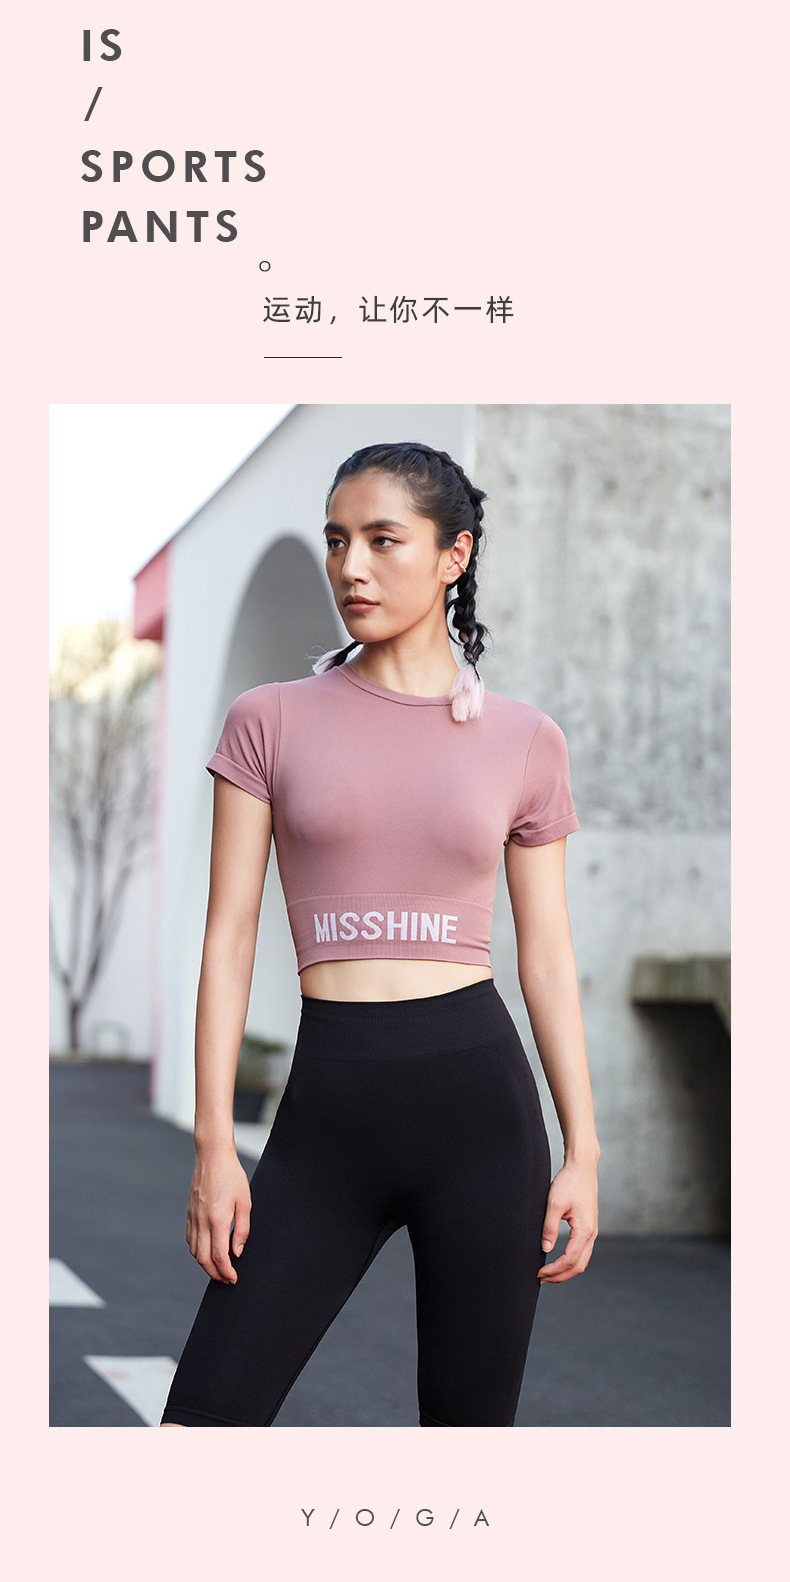 健身瑜伽服工厂直销 运动服定做 跑步健身运动衣印logo批发